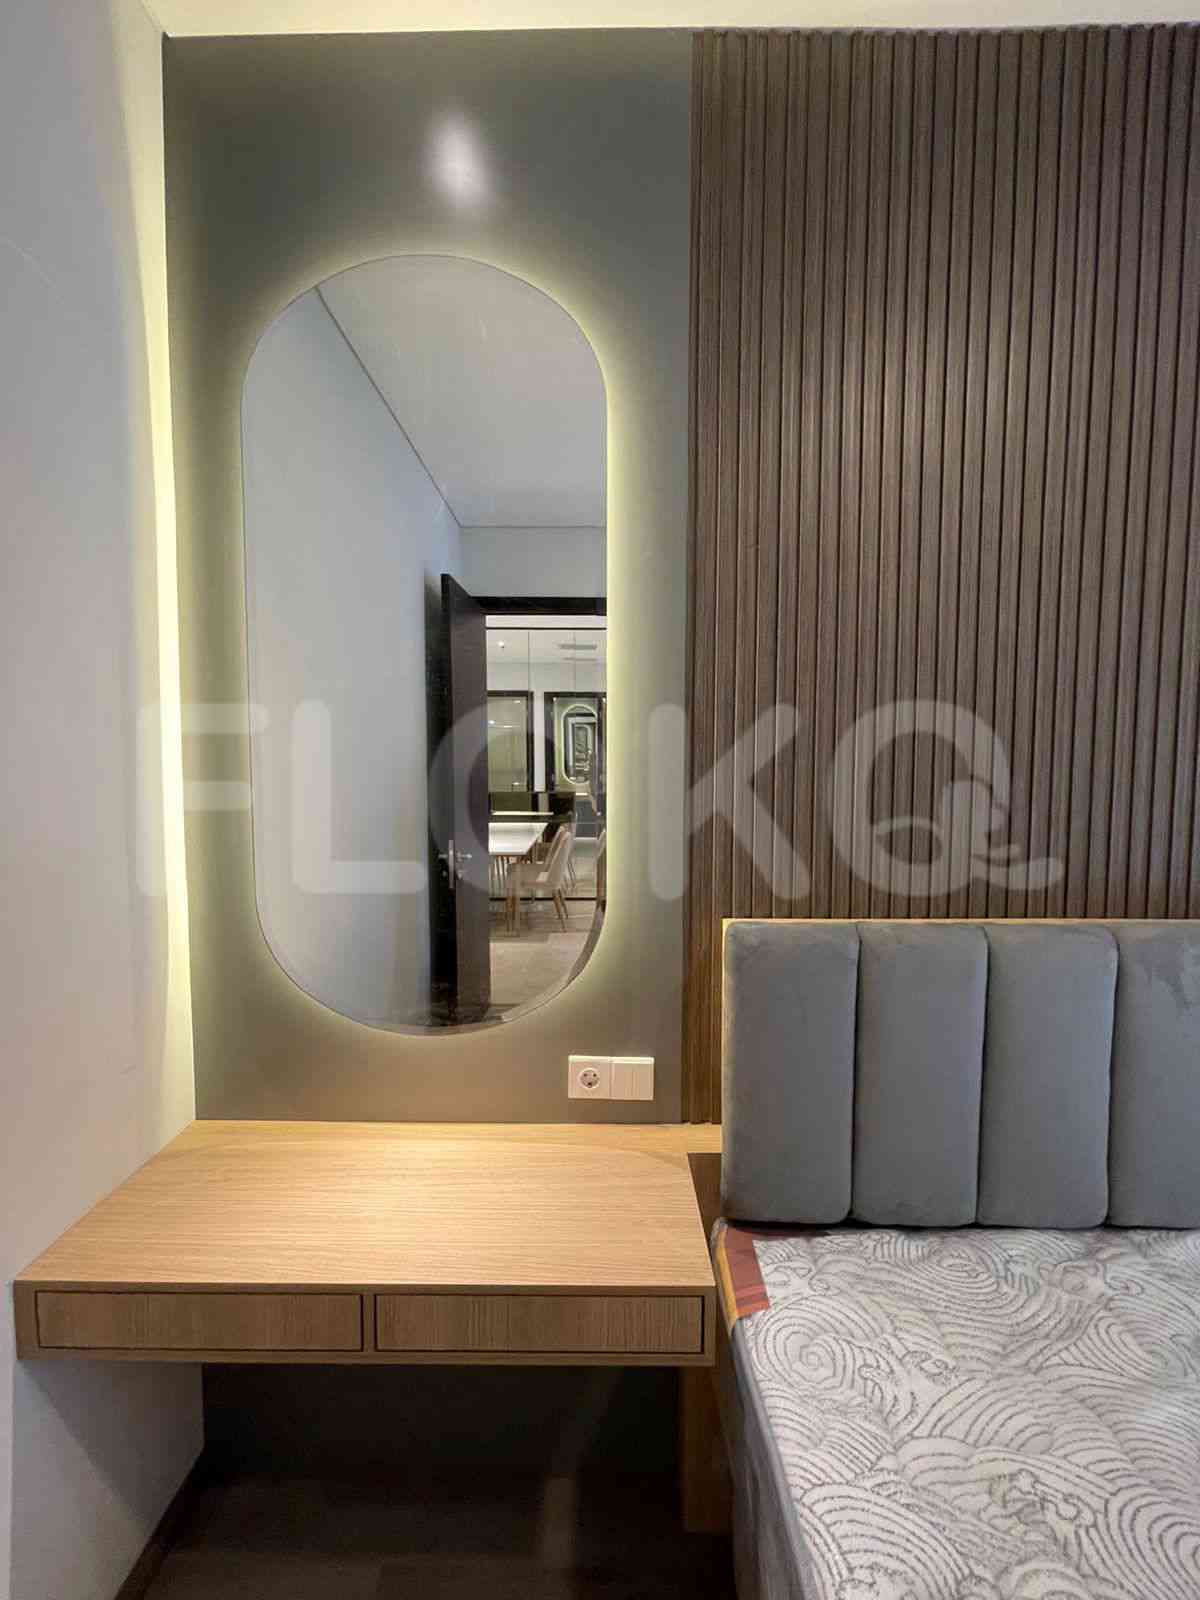 3 Bedroom on 10th Floor for Rent in Sudirman Suites Jakarta - fsuaf7 16